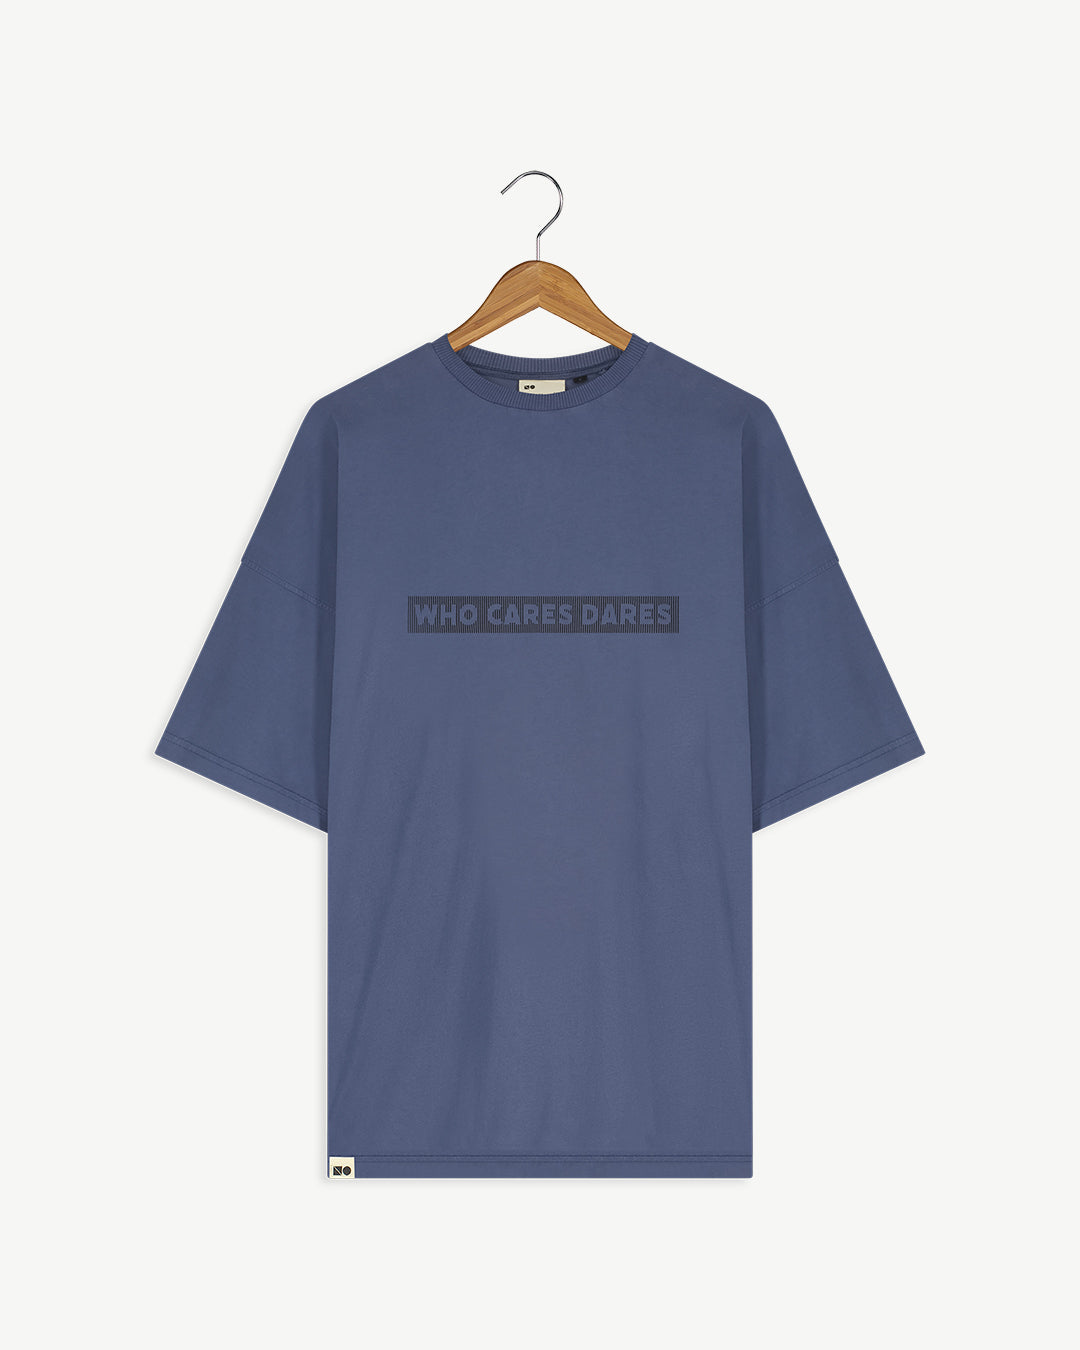 New Optimist menswear Spiaggia T-shirt